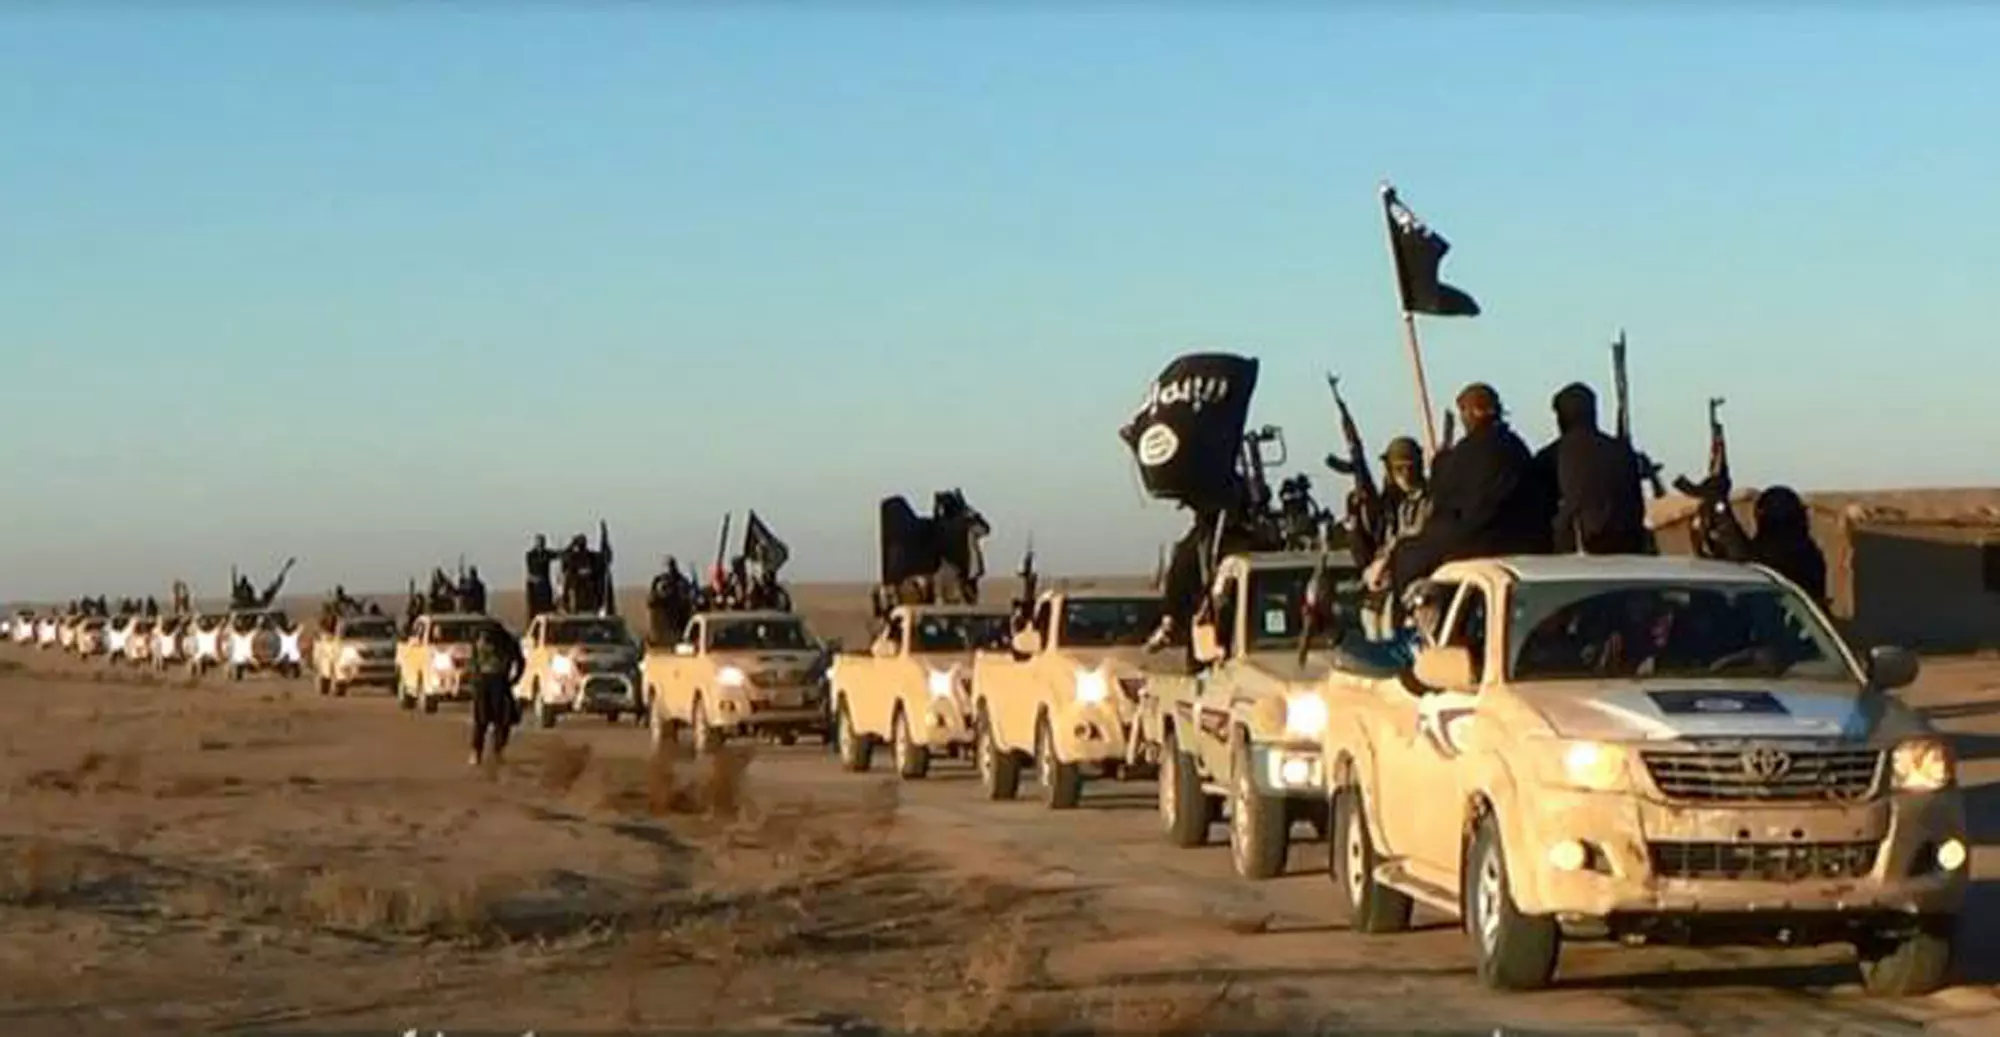 צבא עיראק נמצא עדיין בפרבר, אך הוא מנהל מלחמת גרילה עם הארגון. לוחמי דאעש